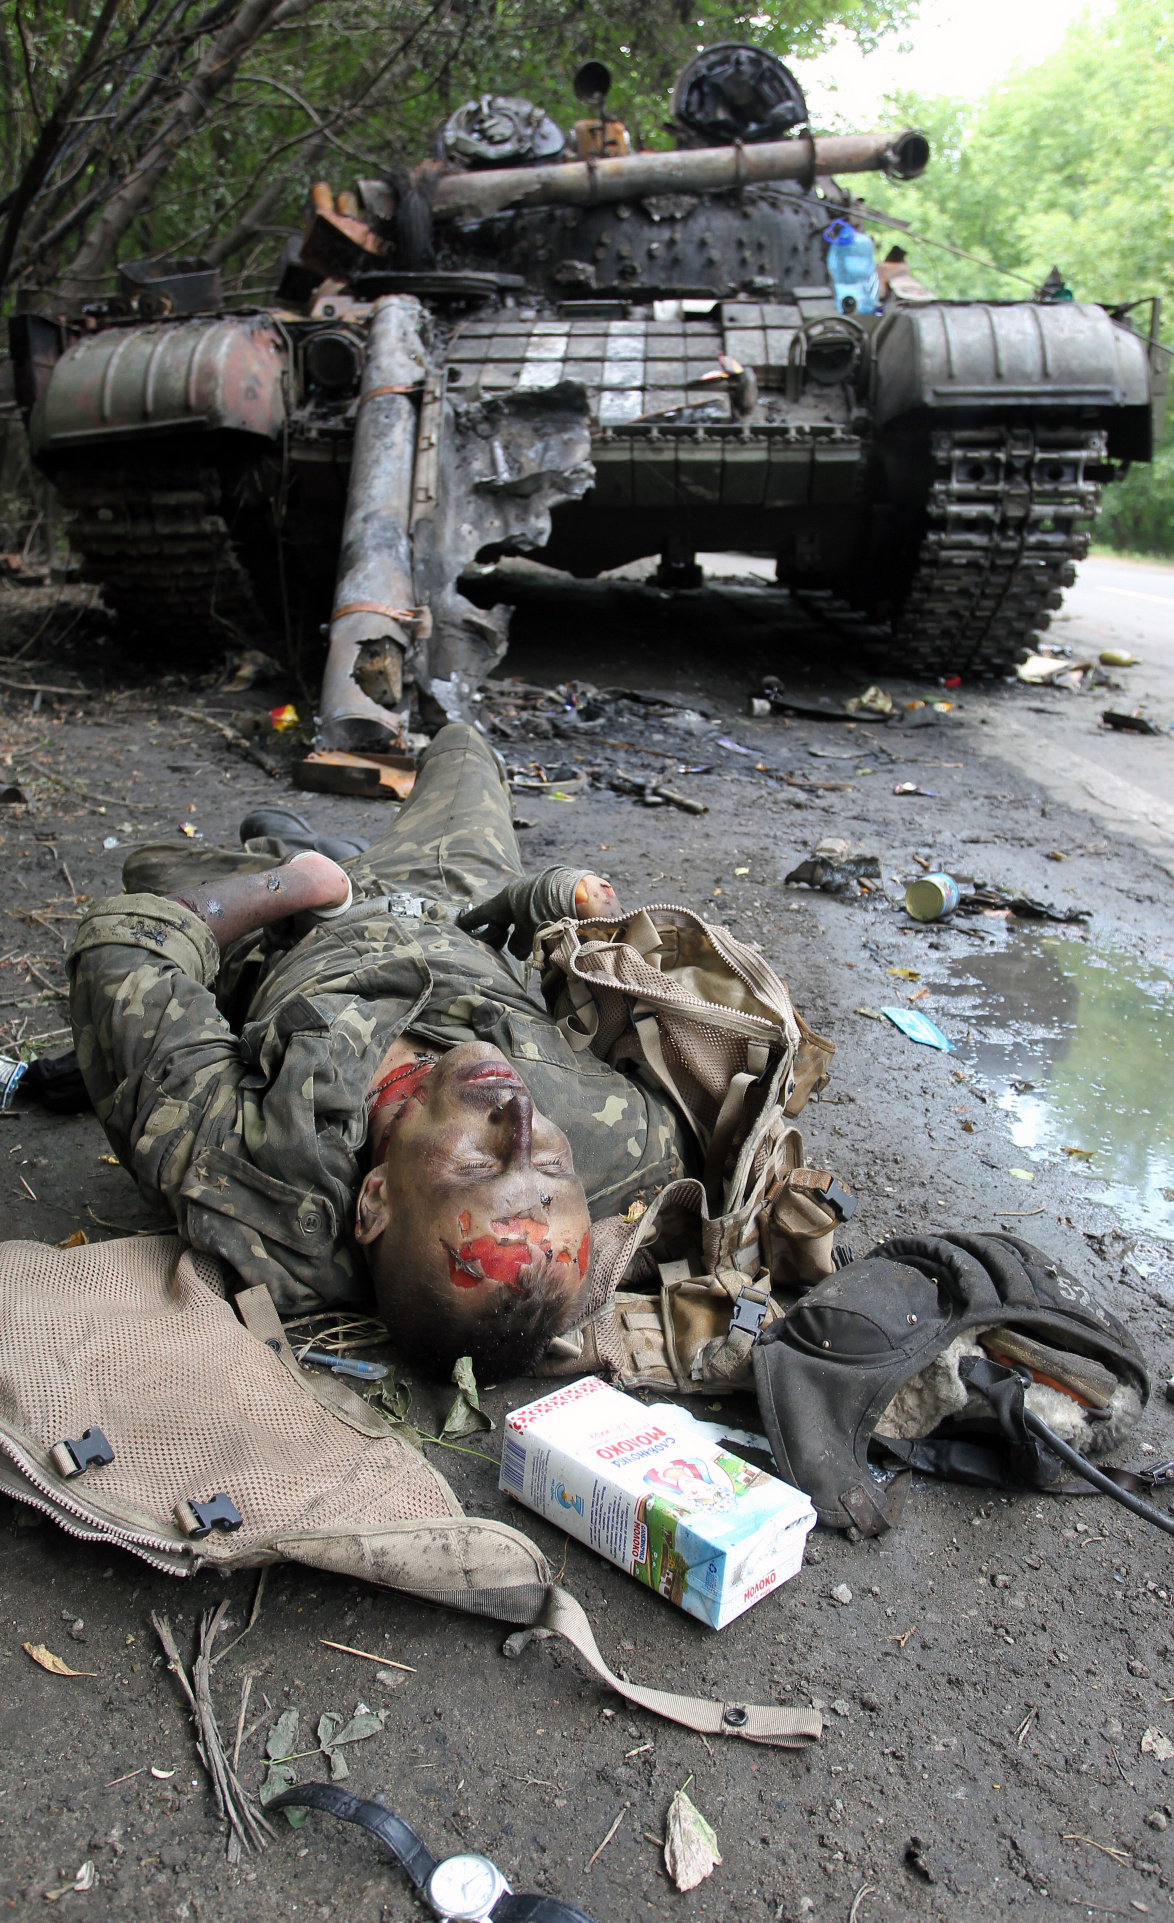 Погибший боец украиской армии у подбитого танка. Фото - Игорь Коваленко